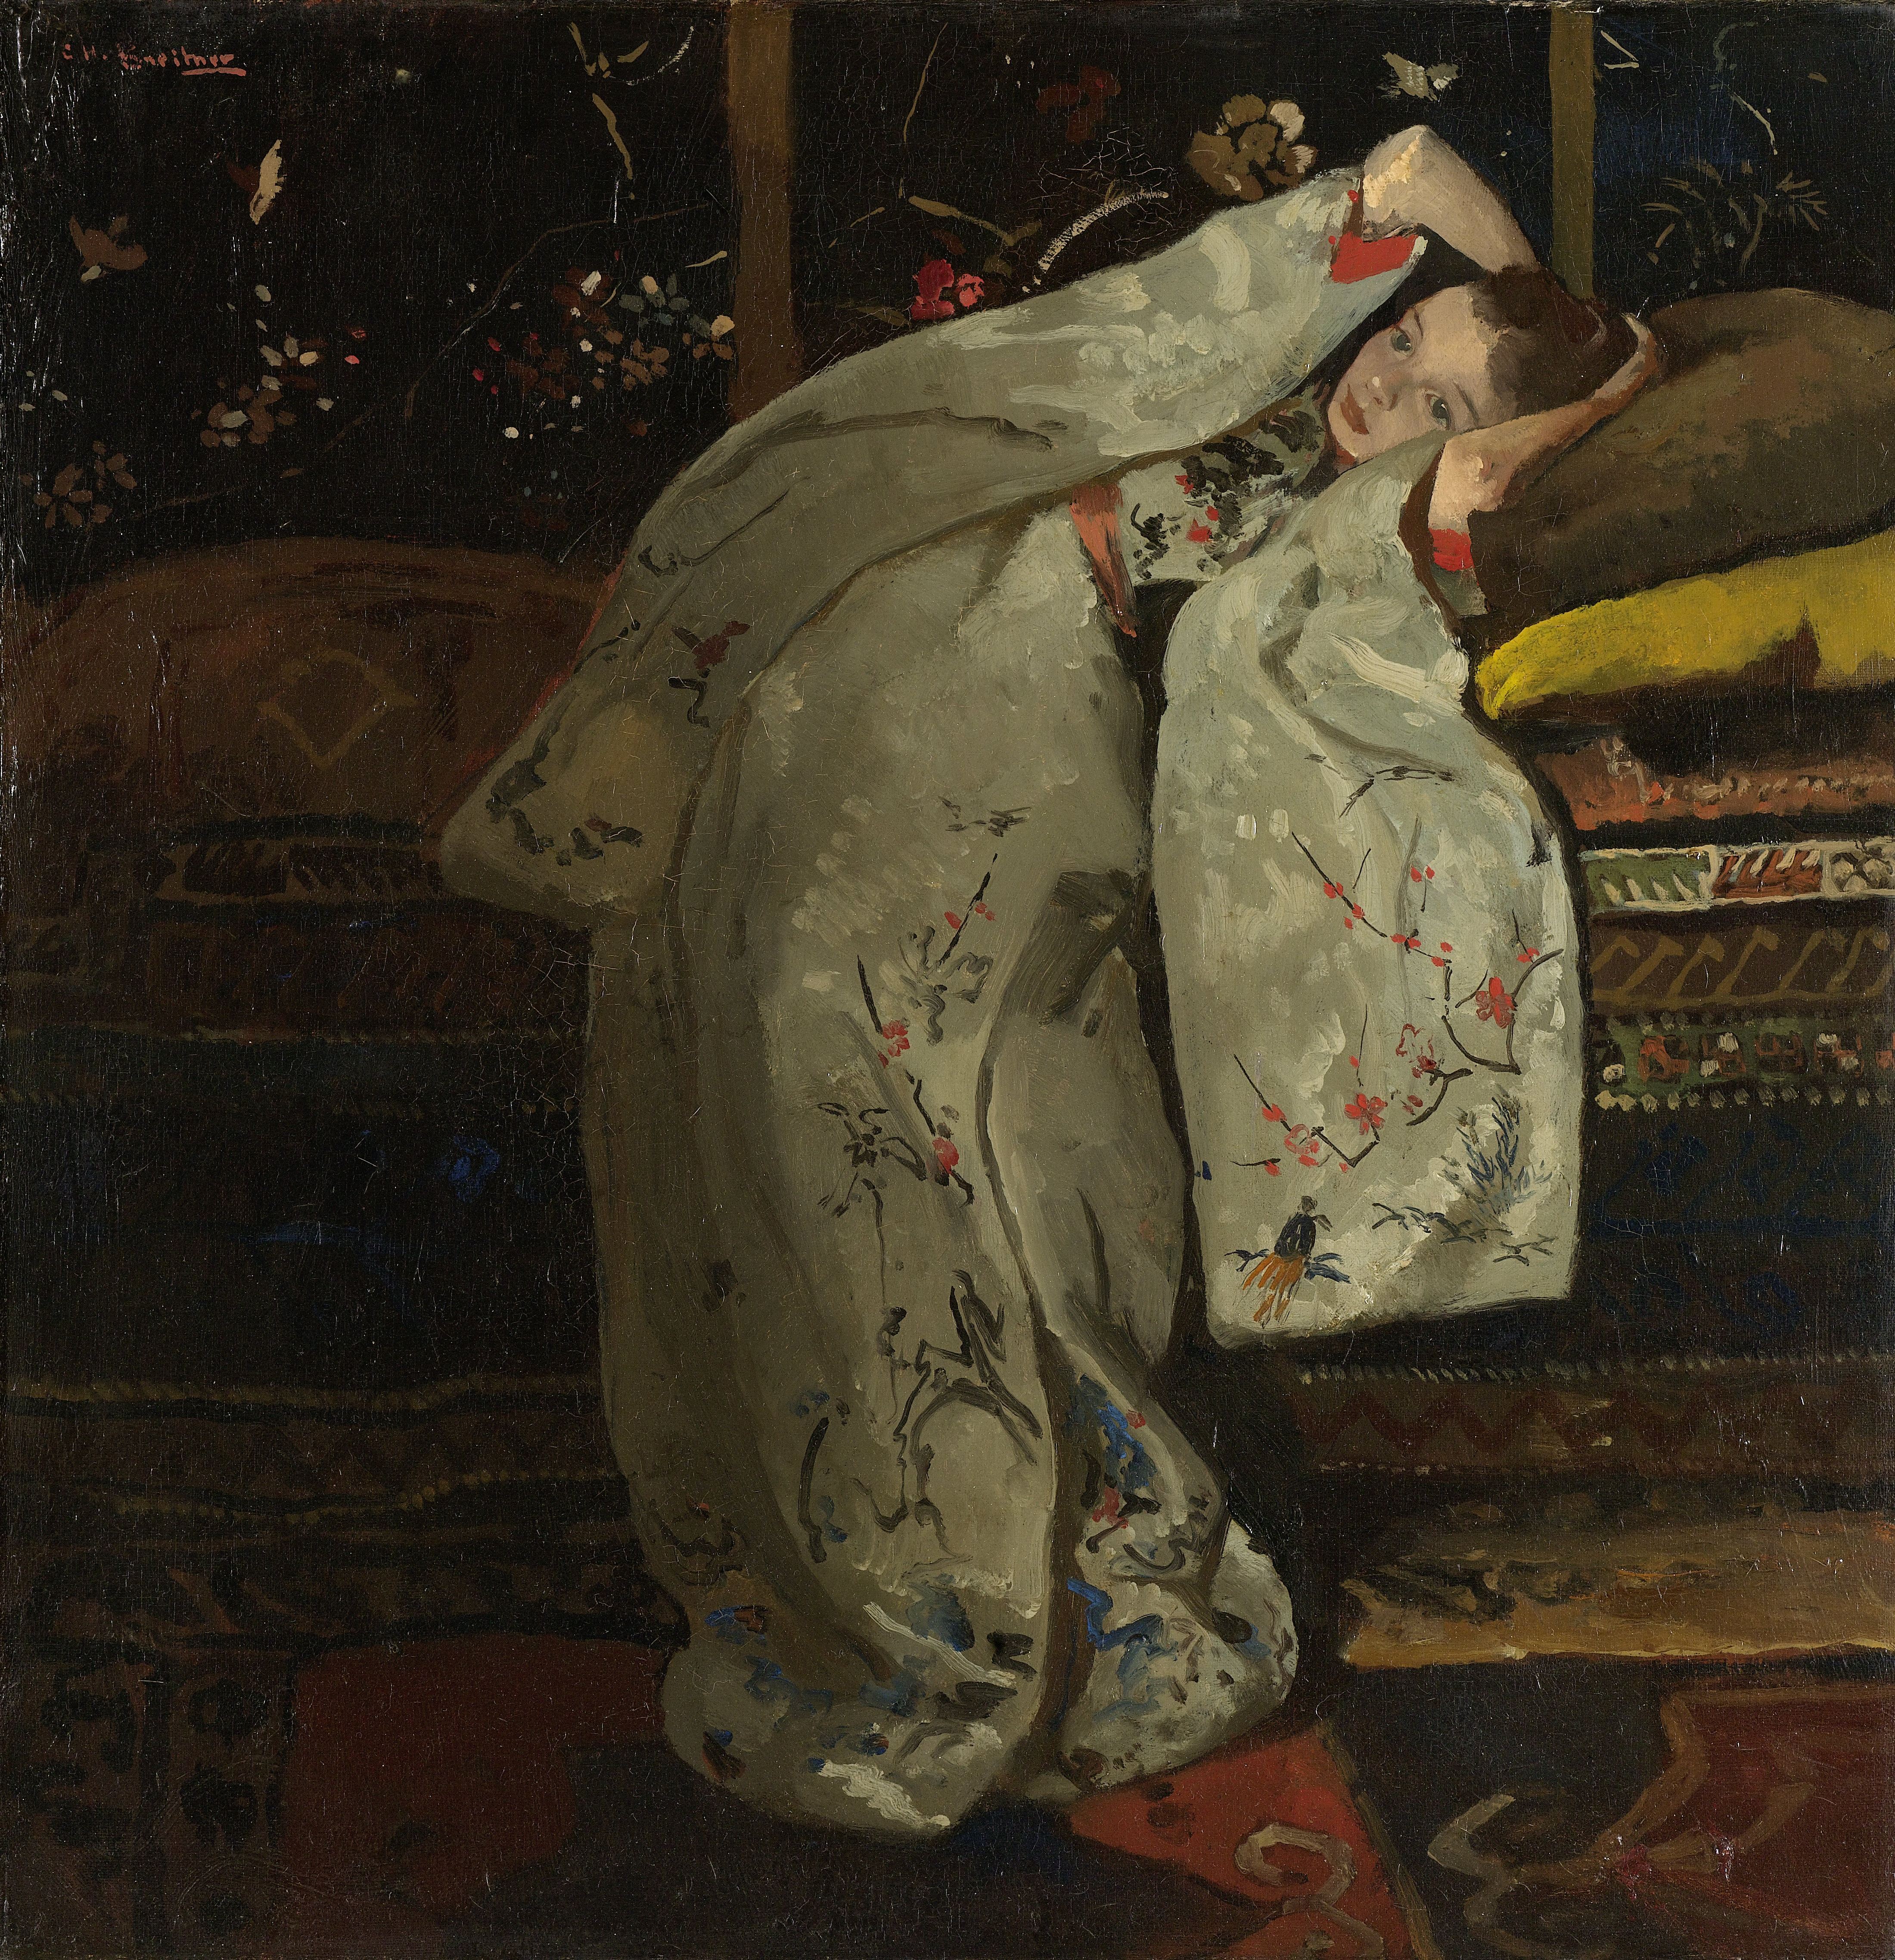 Ragazza in Kimono bianco by George Hendrik Breitner - 1894 - 59 × 57 cm 